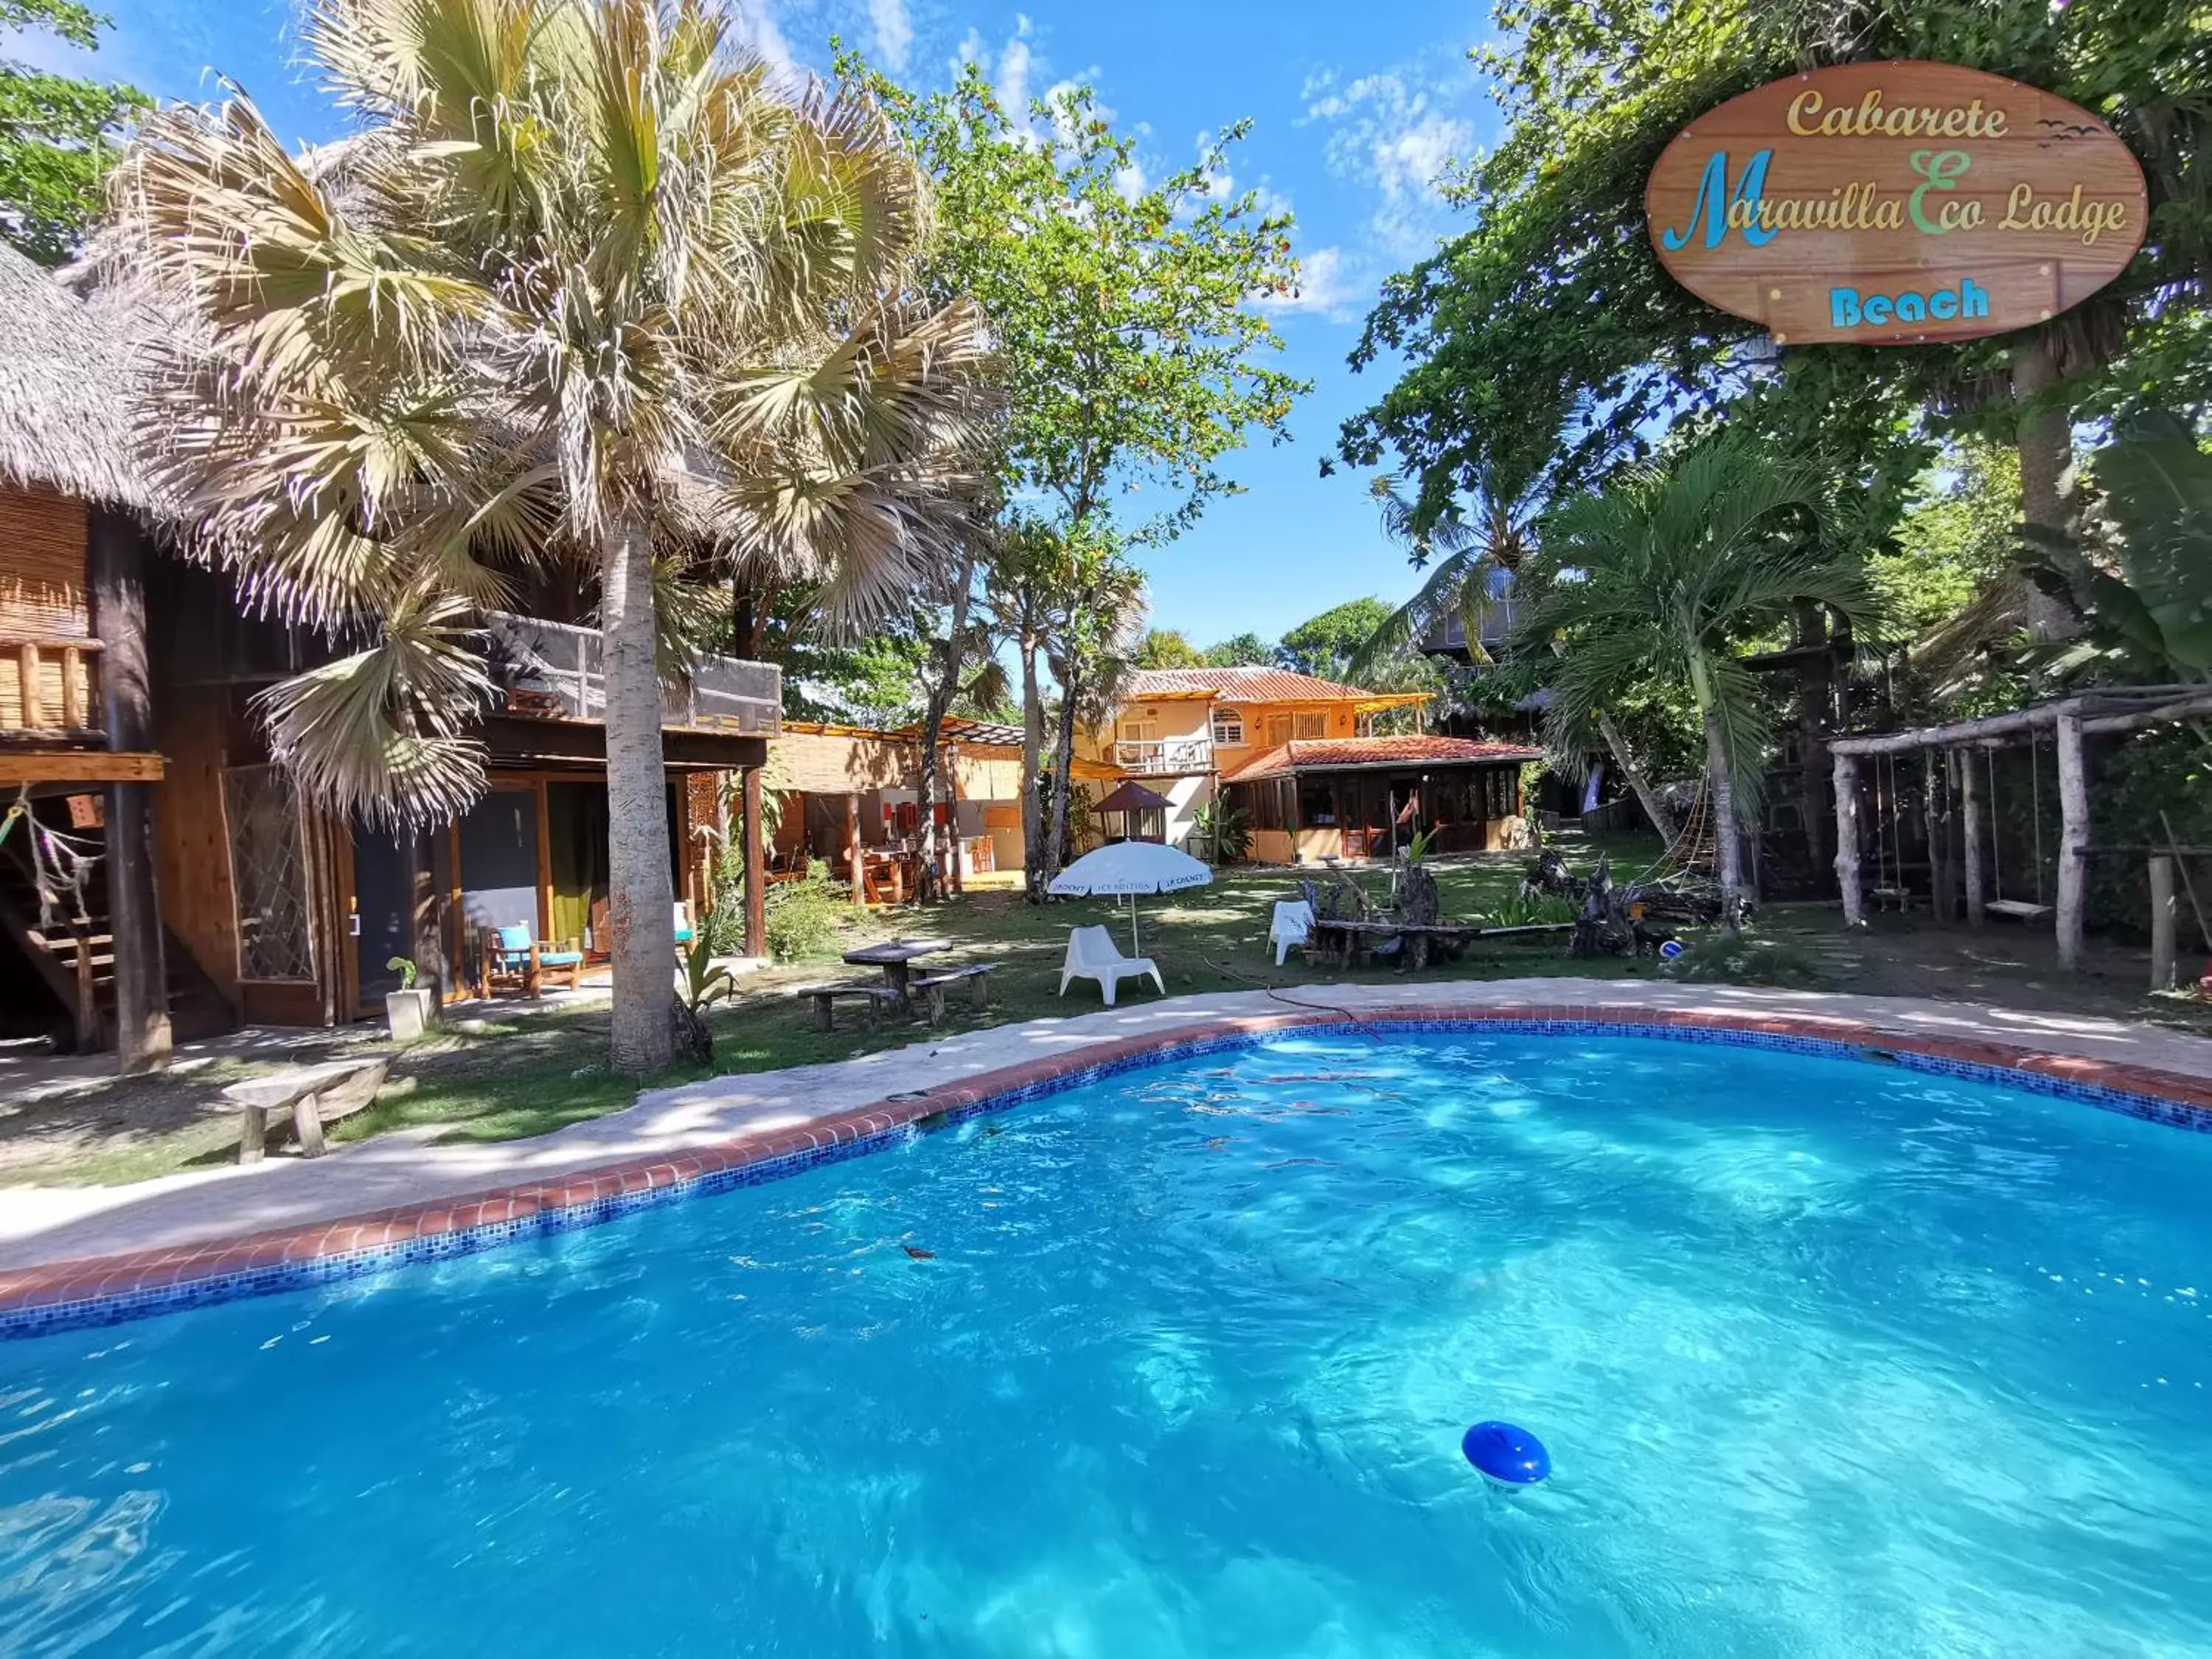 Property building, Swimming Pool in Cabarete Maravilla Eco Lodge Boutique Beach Surf & Kite